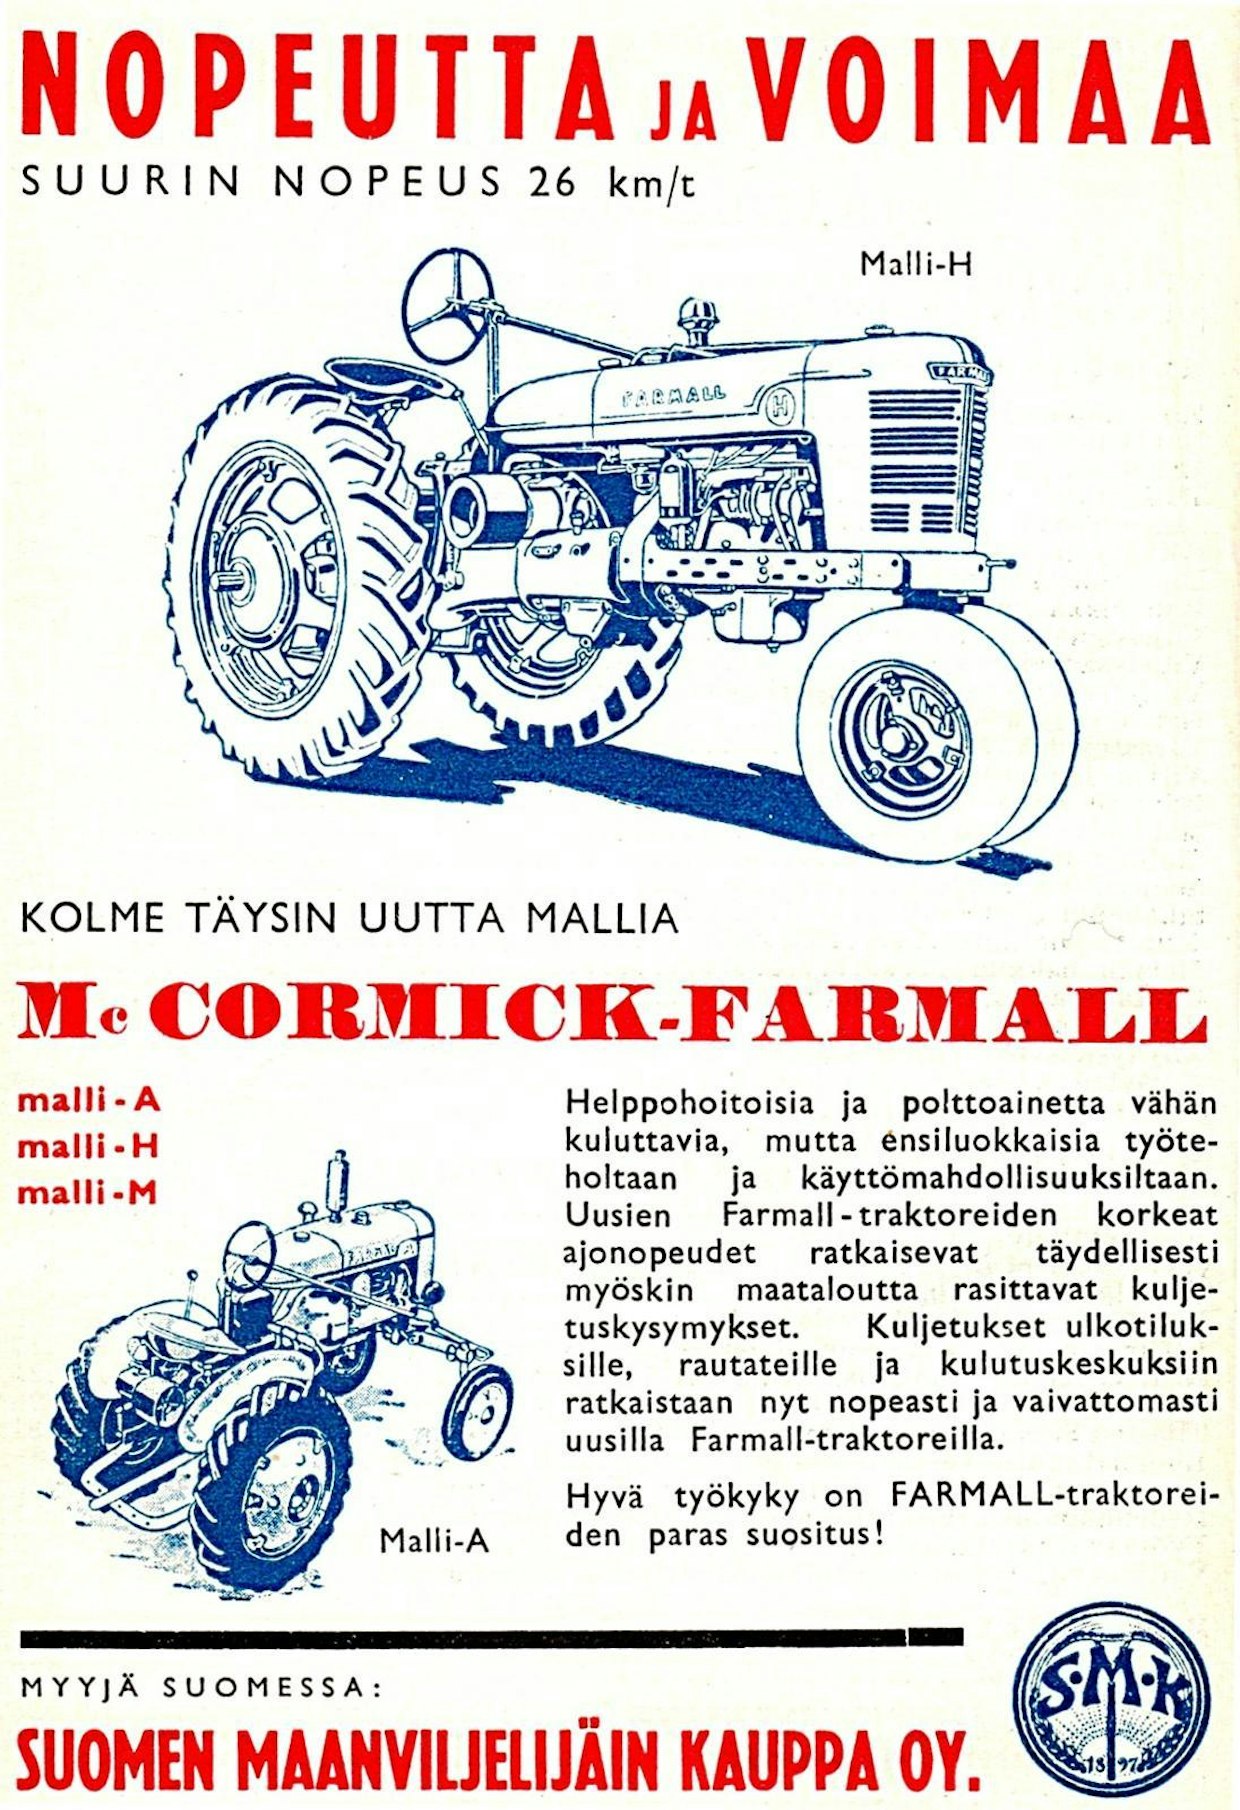 Vuoden 1940 Maatalouskalenteri painettiin rauhan aikana. Niinpä siinä mainostettiin uutta Farmall-mallistoa, vaikka traktoreiden saanti oli alkutalvesta 1939 lähtien täysin mahdotonta. Muutkin amerikkalaisvalmistajat olivat esitelleet uuden sukupolven traktoreitaan, mutta niiden tuonti oli valuuttasäännöstelyn takia hankalaa vielä sotien jälkeenkin.